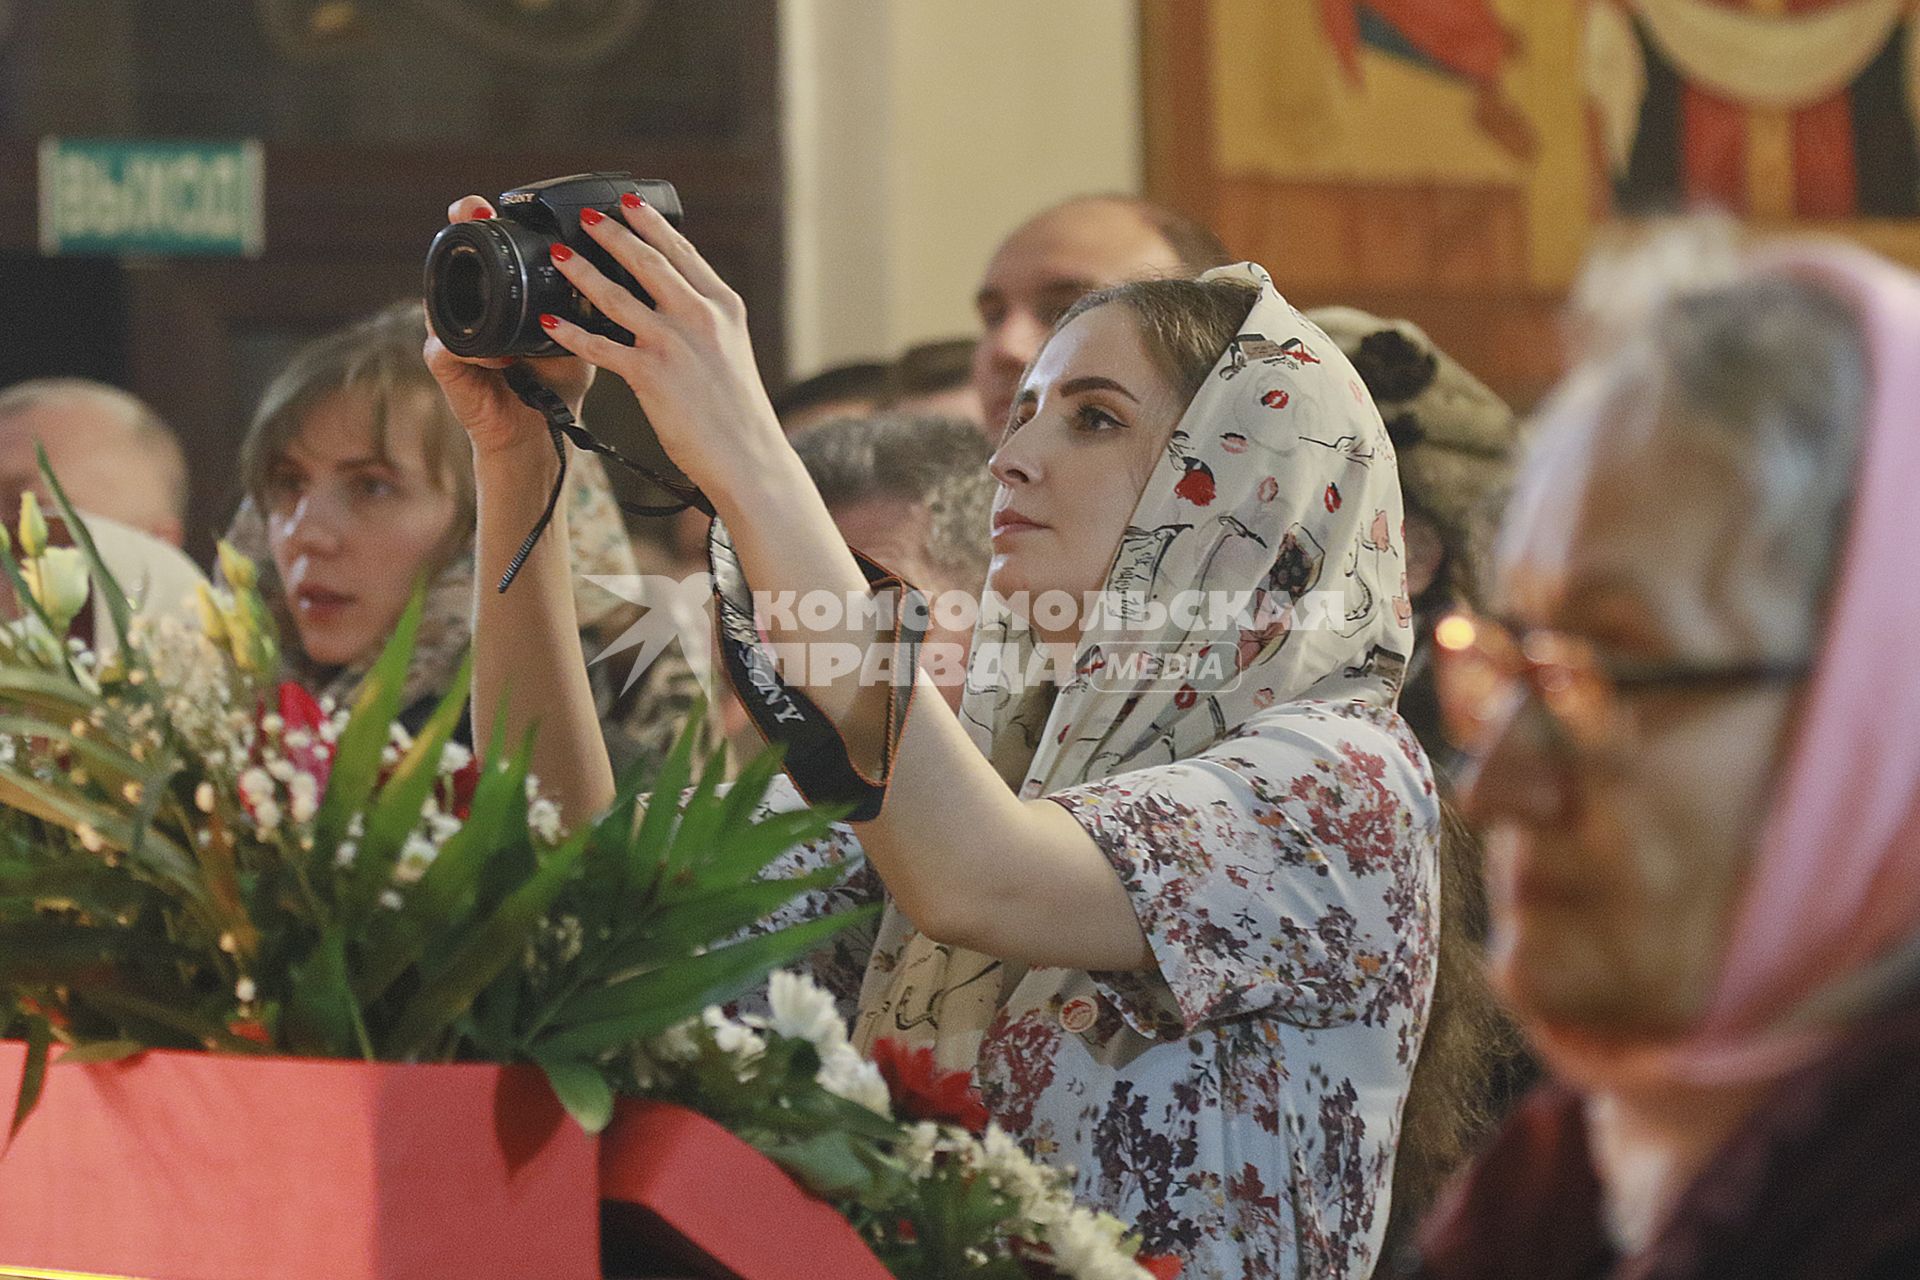 Барнаул. Верующие на пасхальном богослужении в церкви.